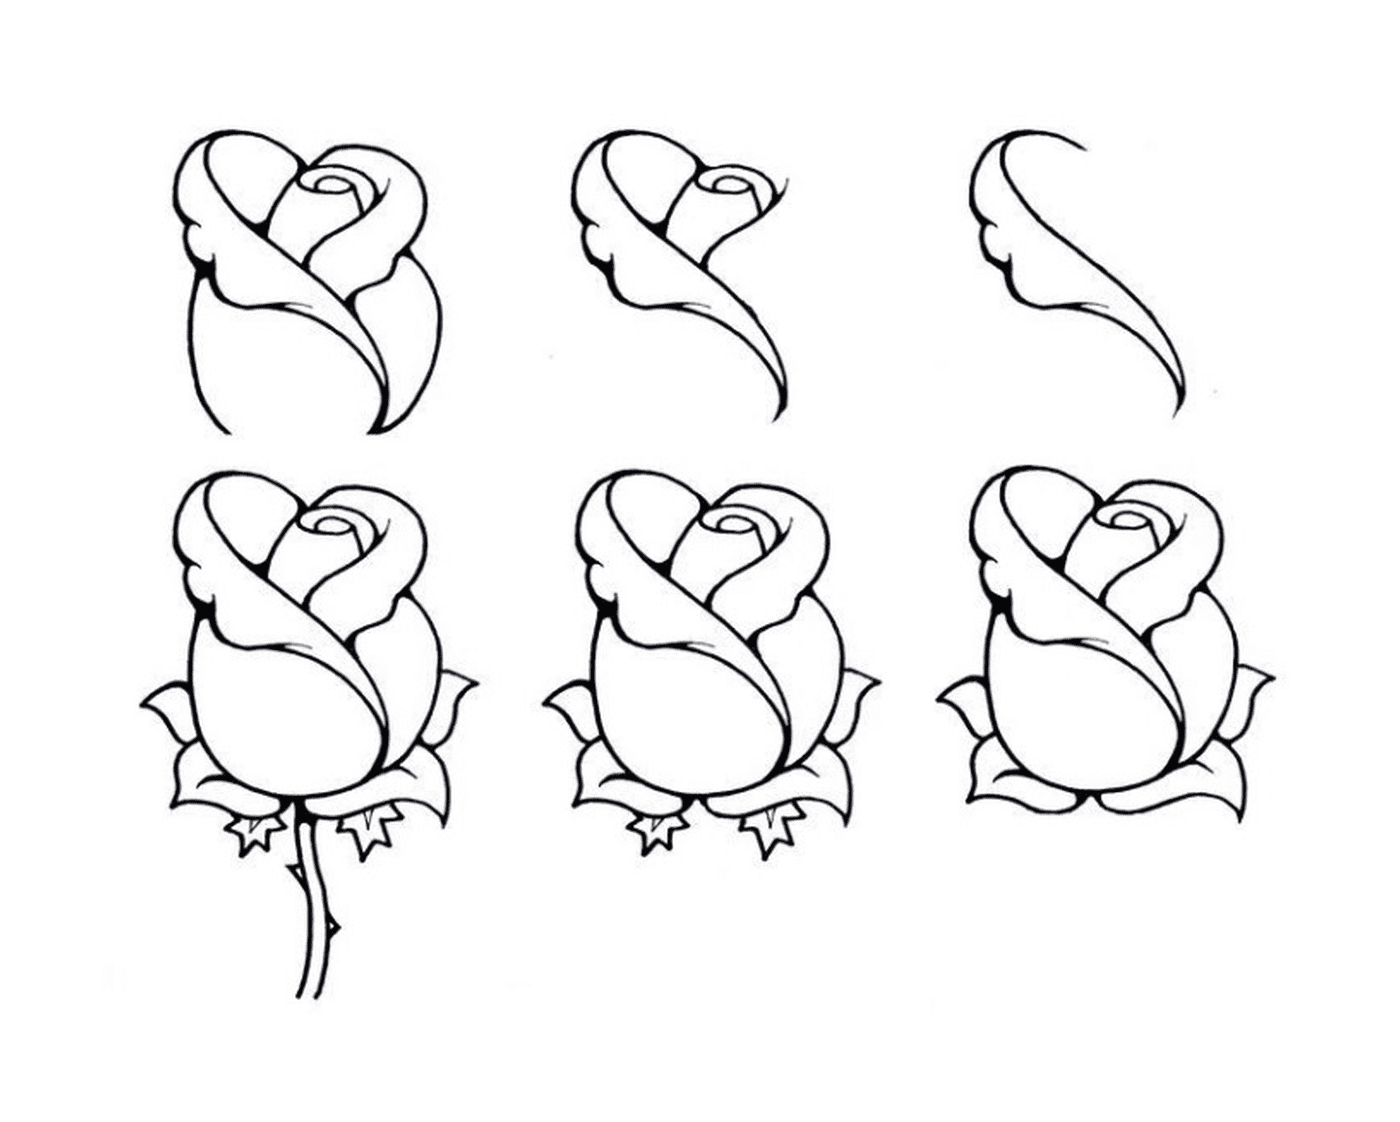   Comment dessiner une rose facilement 